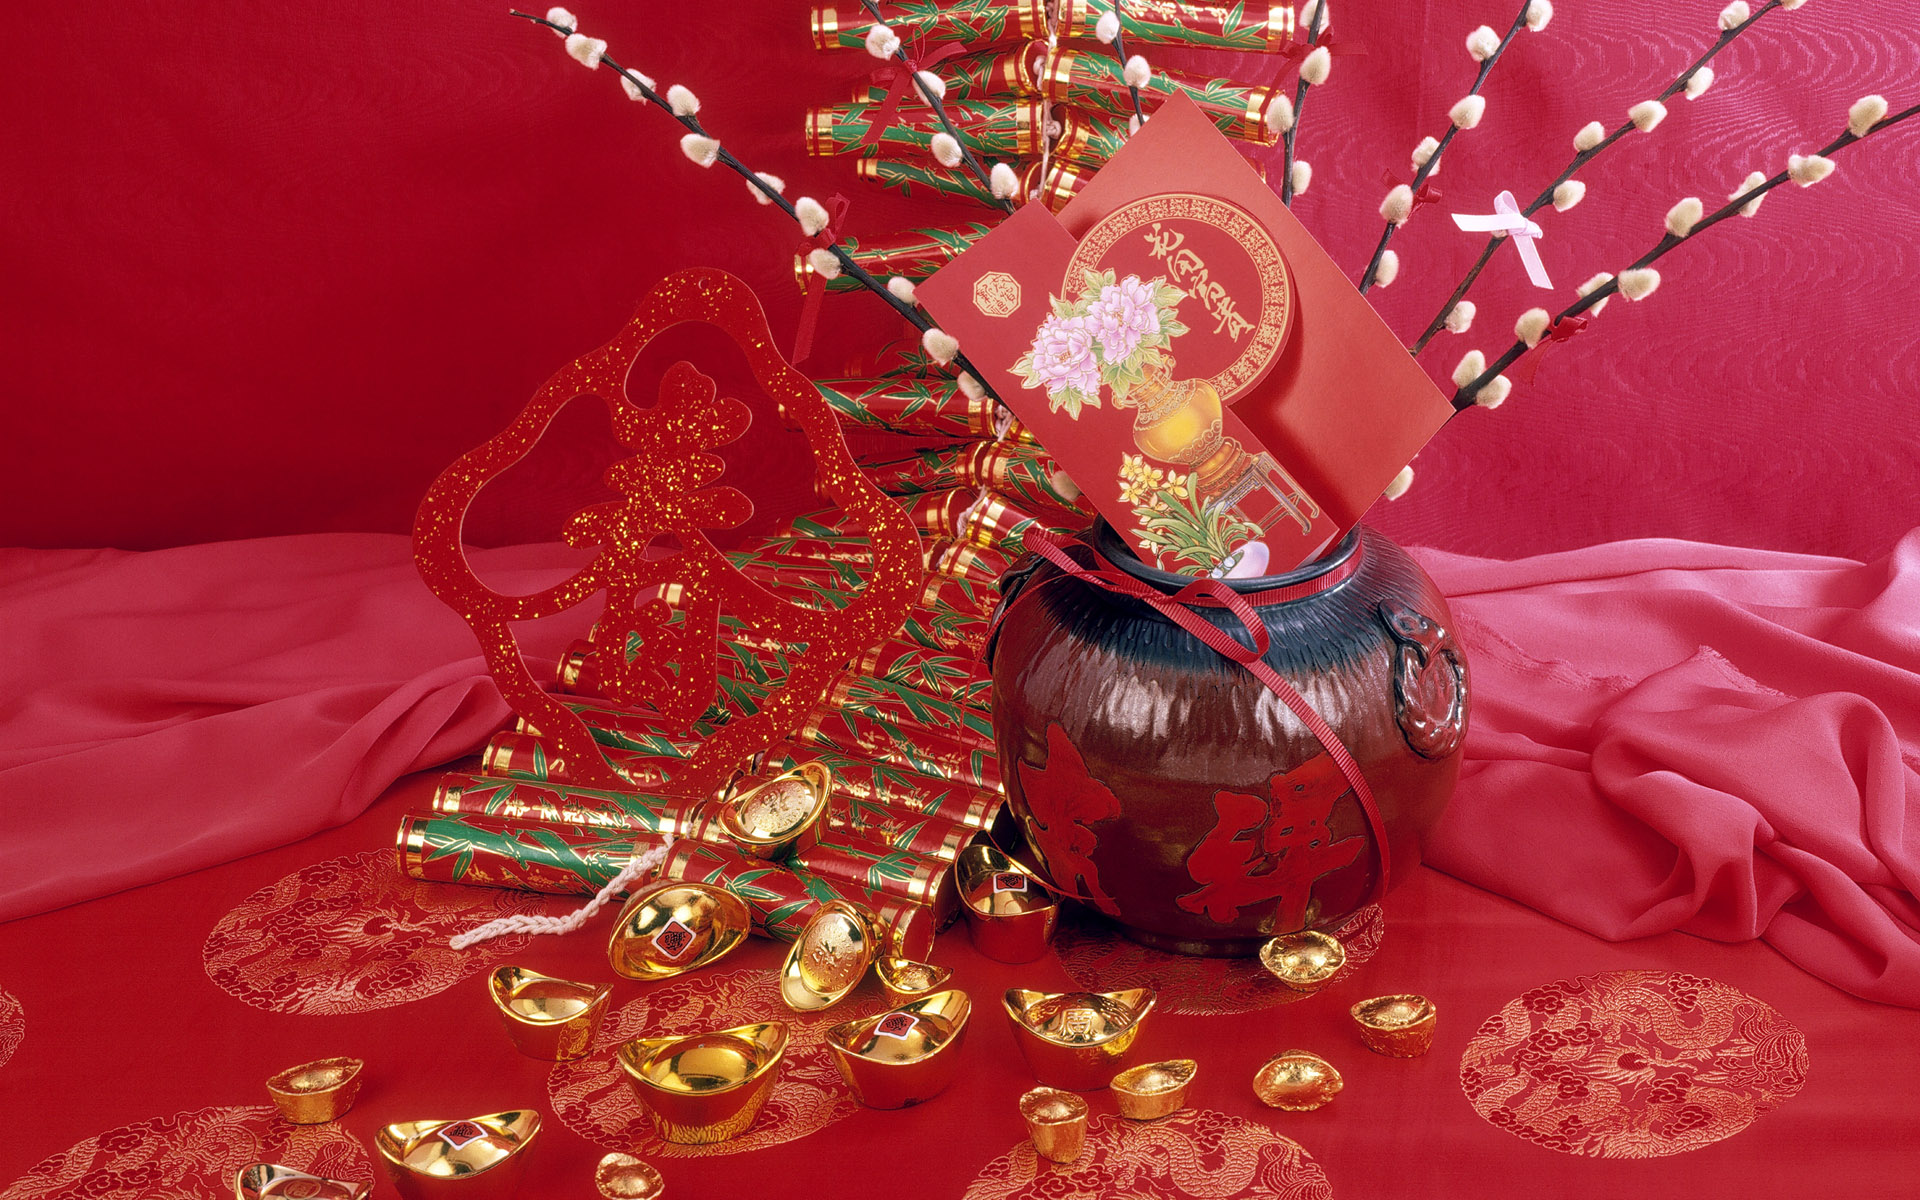 carta da parati cinese di nuovo anno,rosso,natura morta,centrotavola,fotografia di still life,cristallo